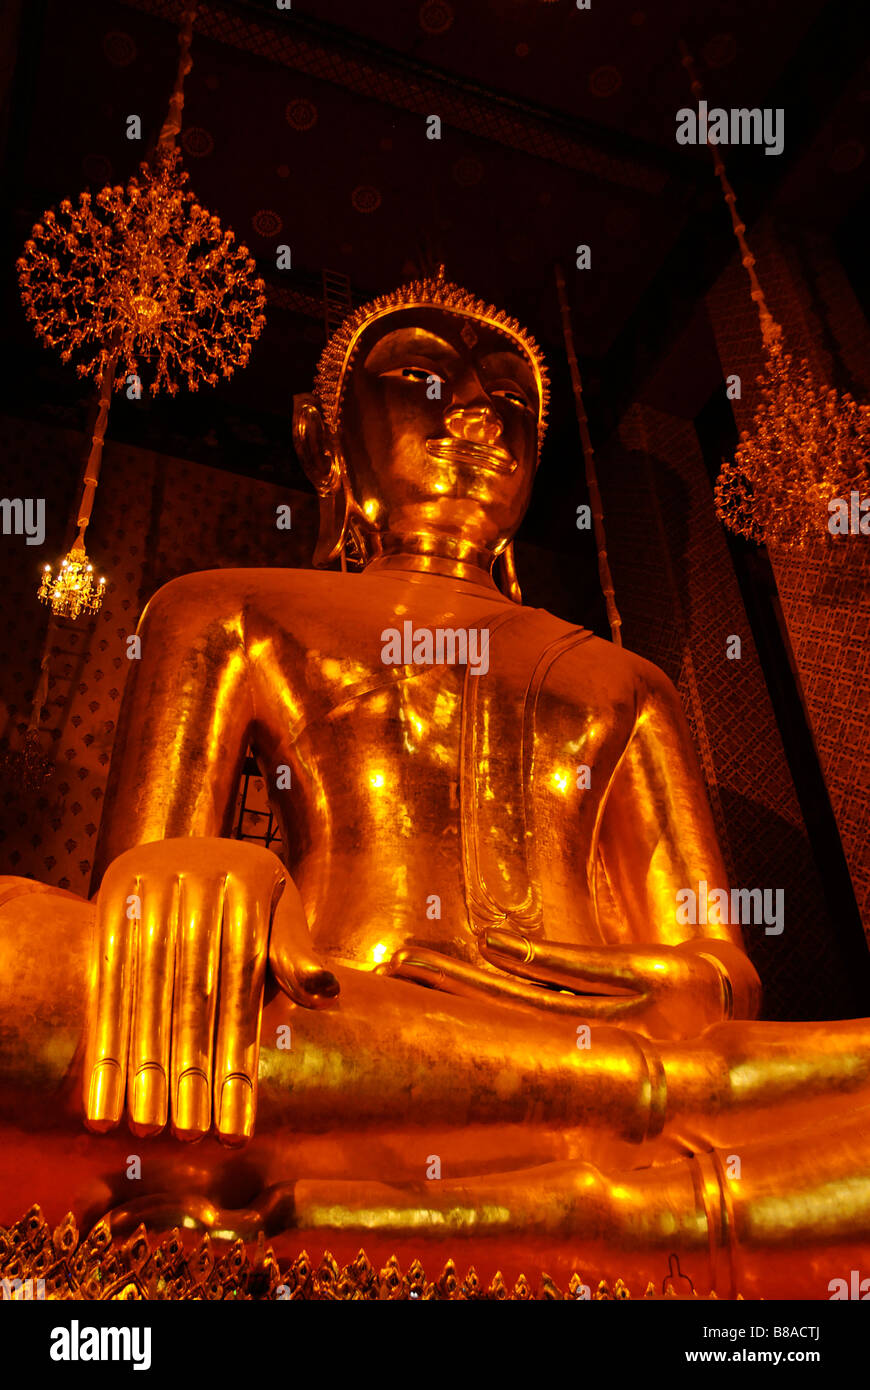 Wat Kalayanamit Tempel enthält die größte sitzender Buddha in Thailand - Bangkok Stockfoto